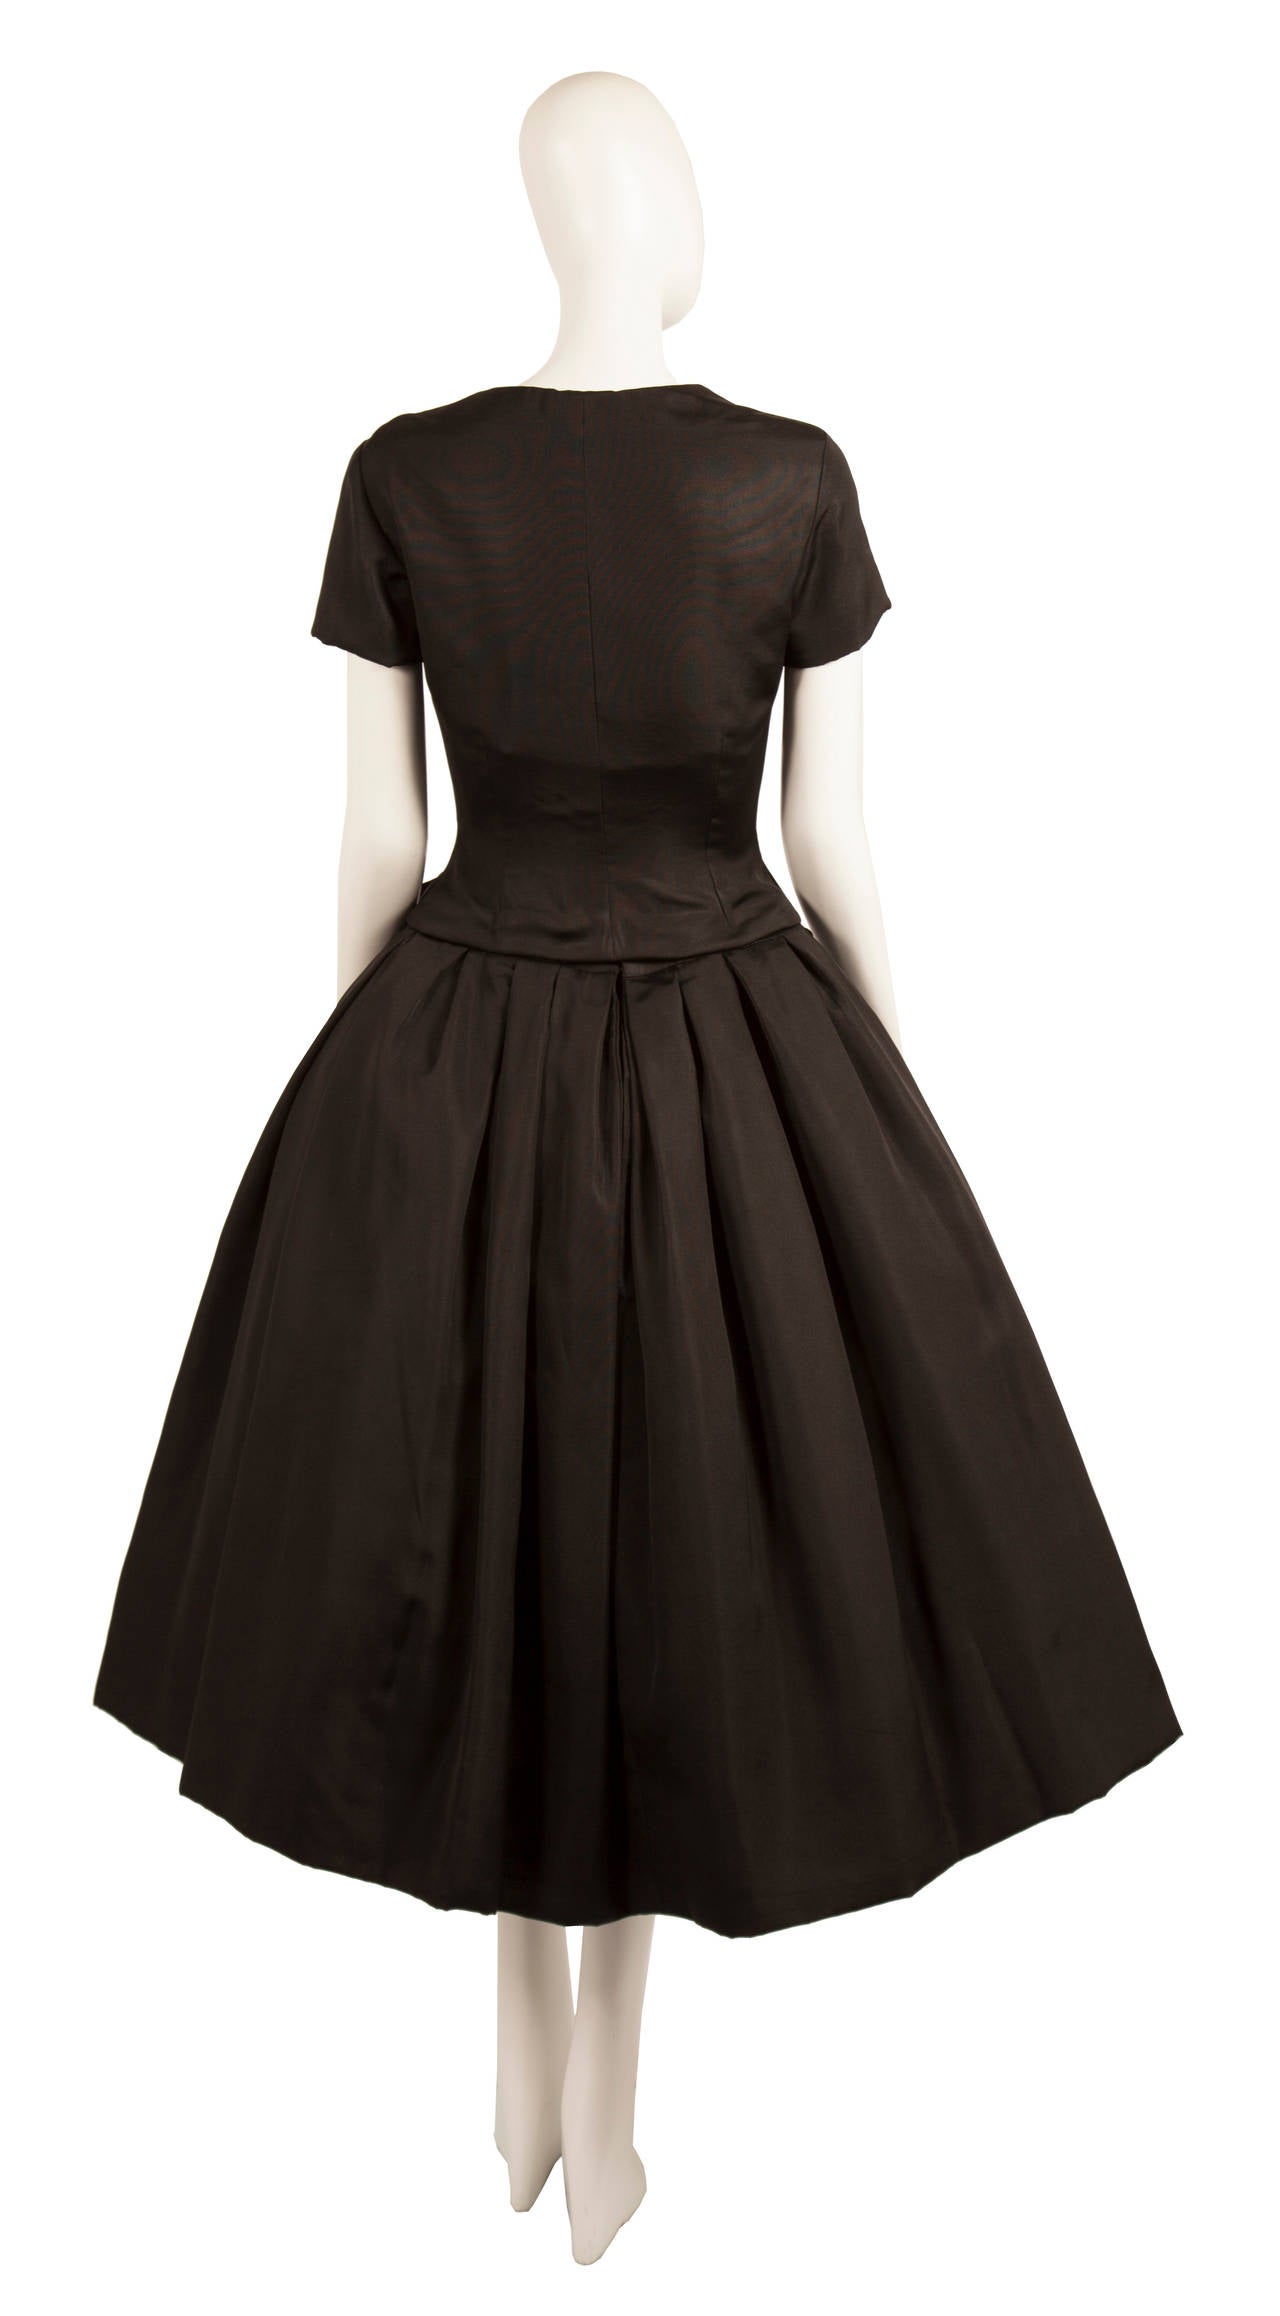 1954 dresses